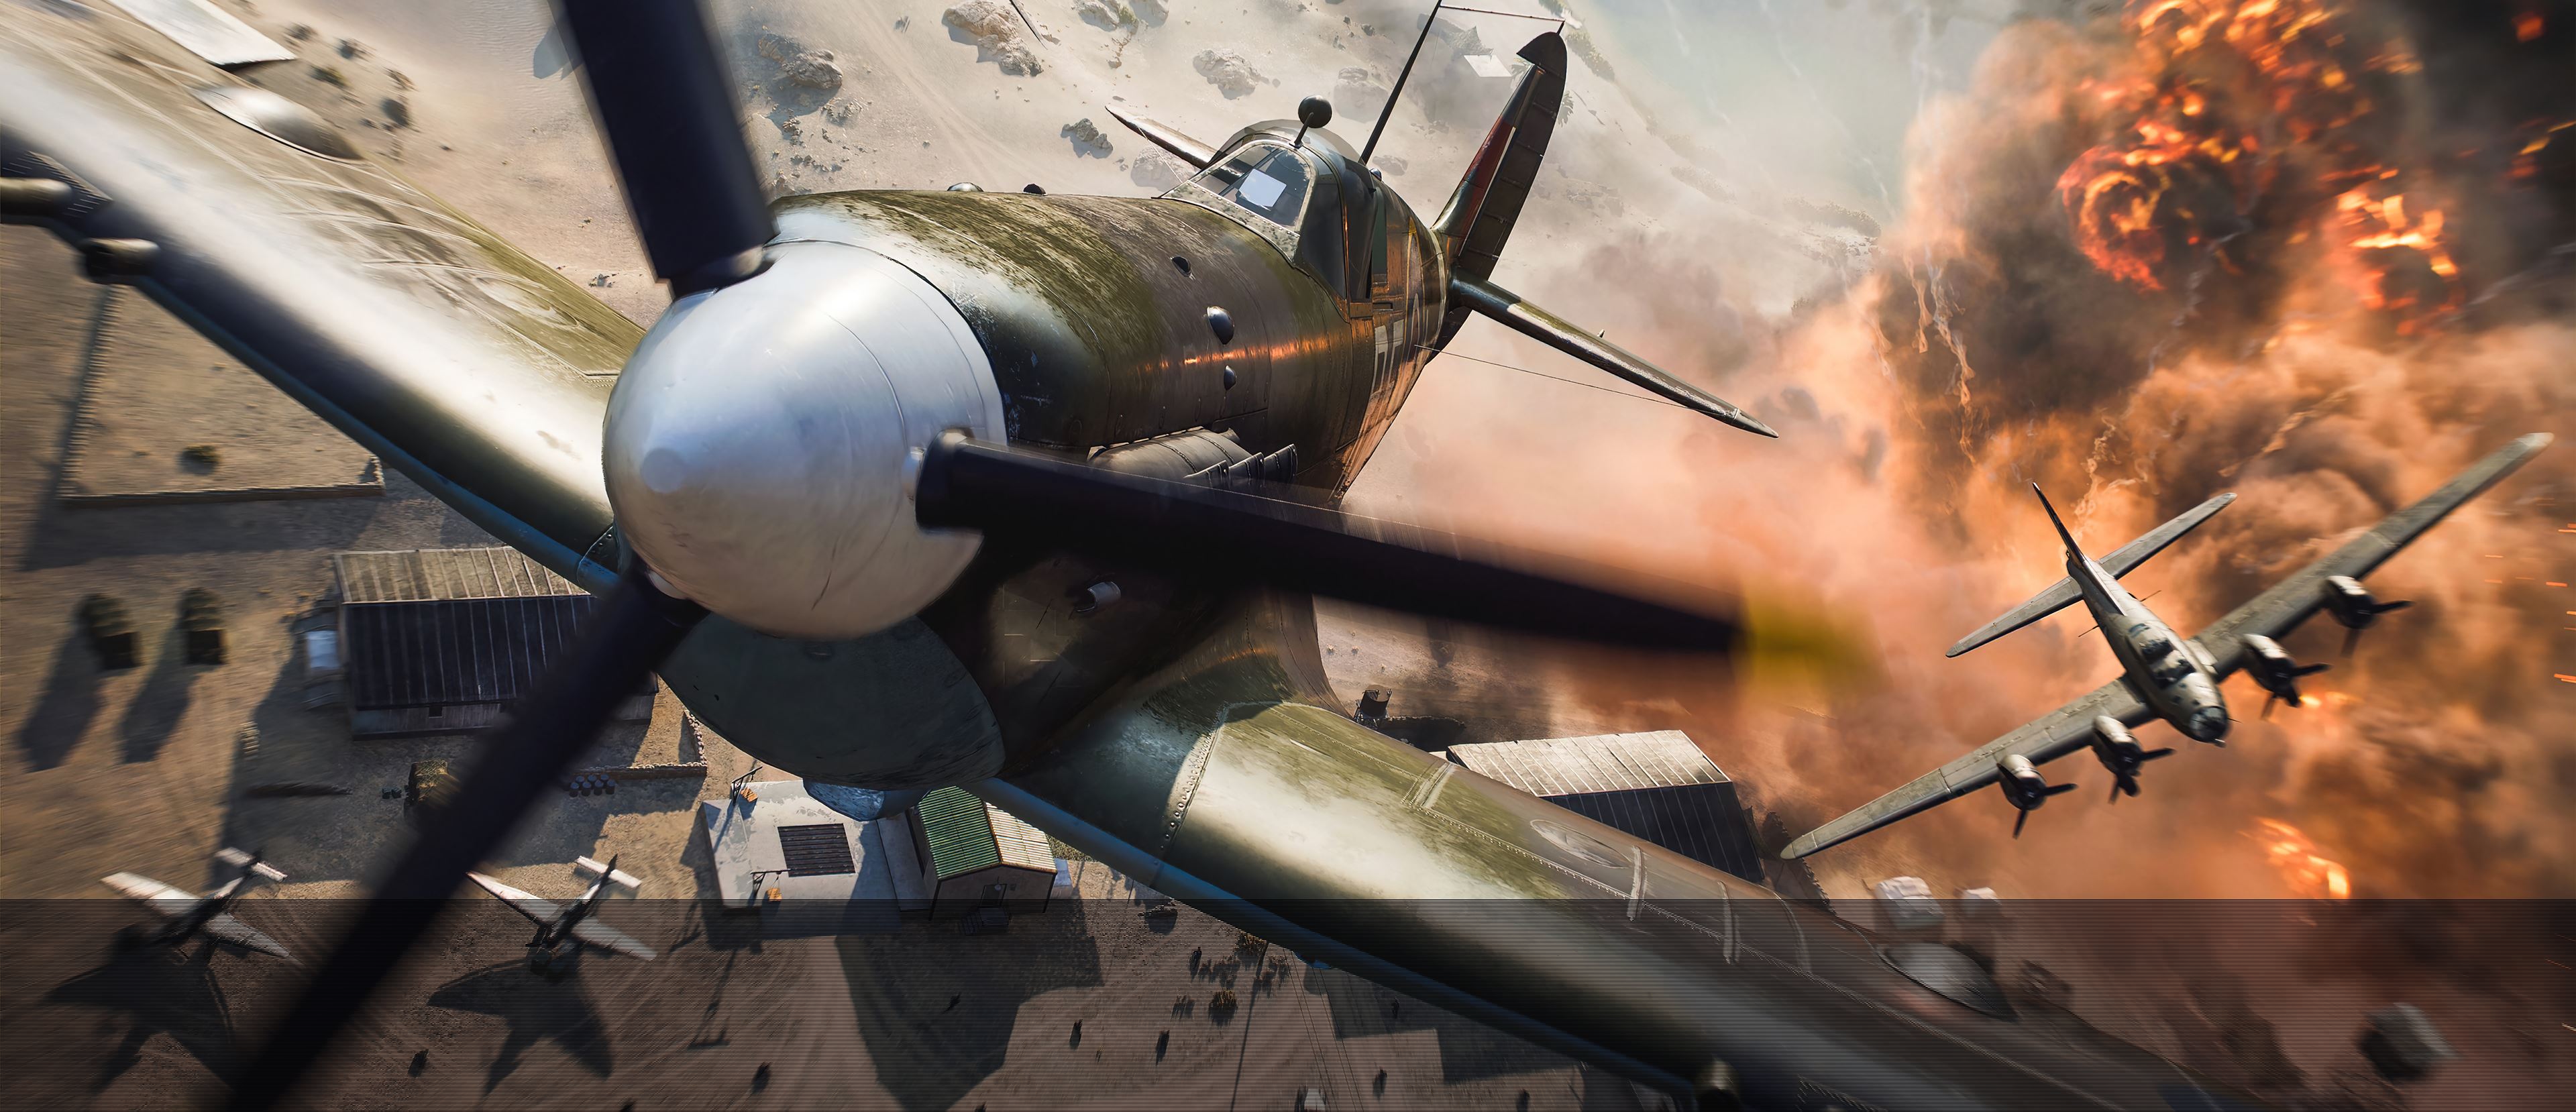 Инсайдер: Анонс новых игр Respawn сделали для отвлечения внимания инвесторов от провала Battlefield 2042